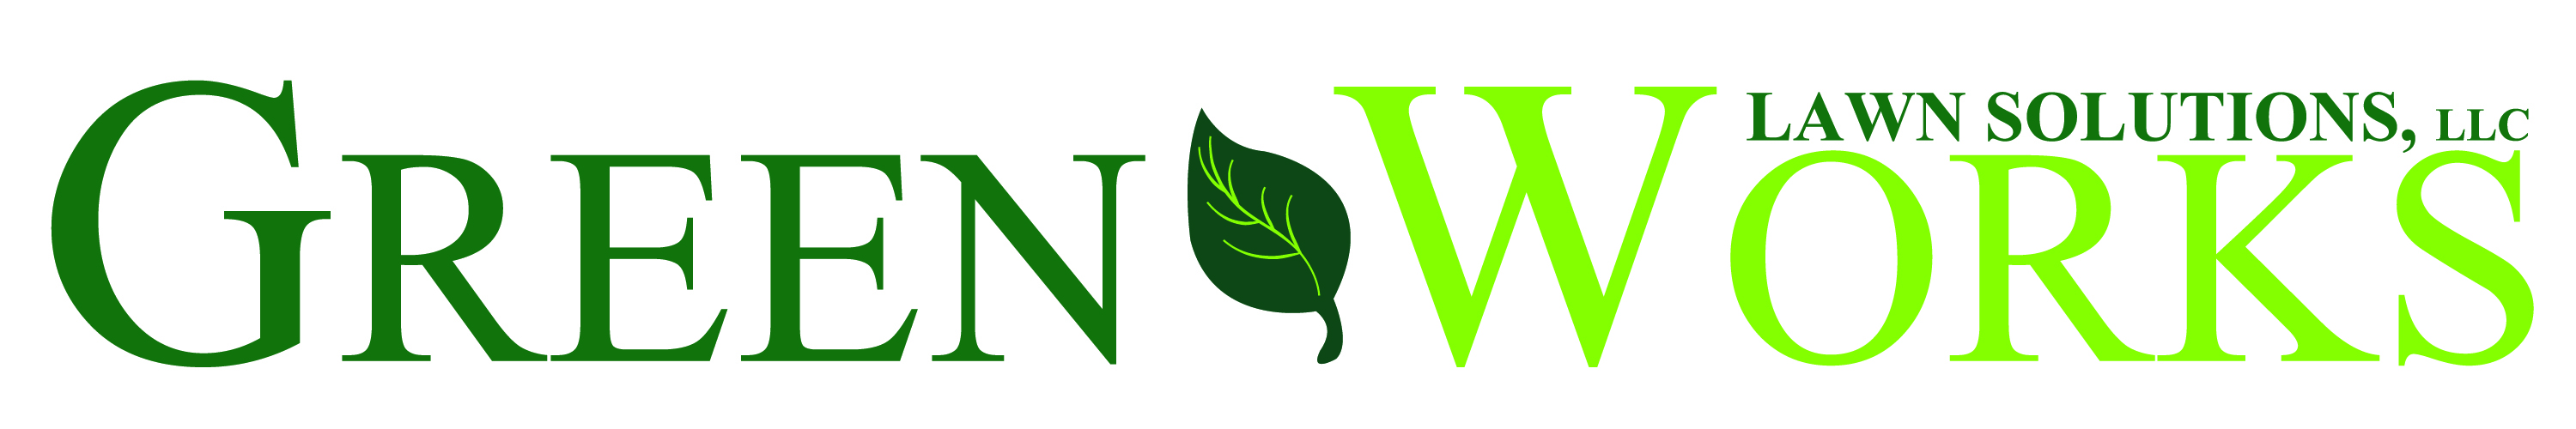 GreenWorks Lawn Solutions LLC